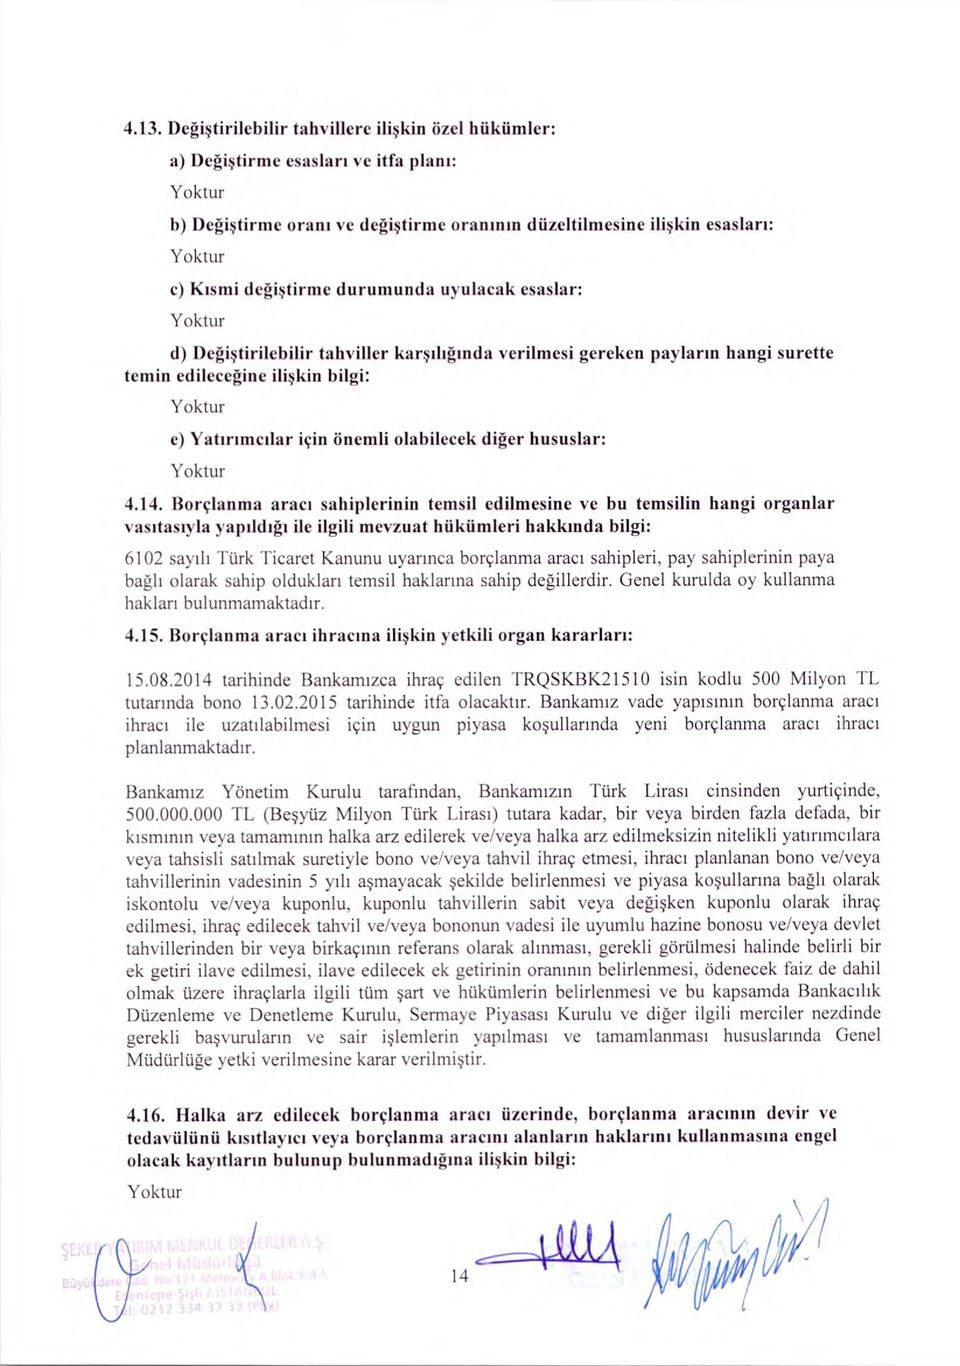 Borçlanma araci sahiplerinin temsil edilmesine ve bu temsilin hangi organlar vasitasiyla yapildigi ile ilgili mevzuat hiikiimleri hakkinda bilgi: 6102 sayili Turk Ticaret Kanunu uyarmca borçlanma